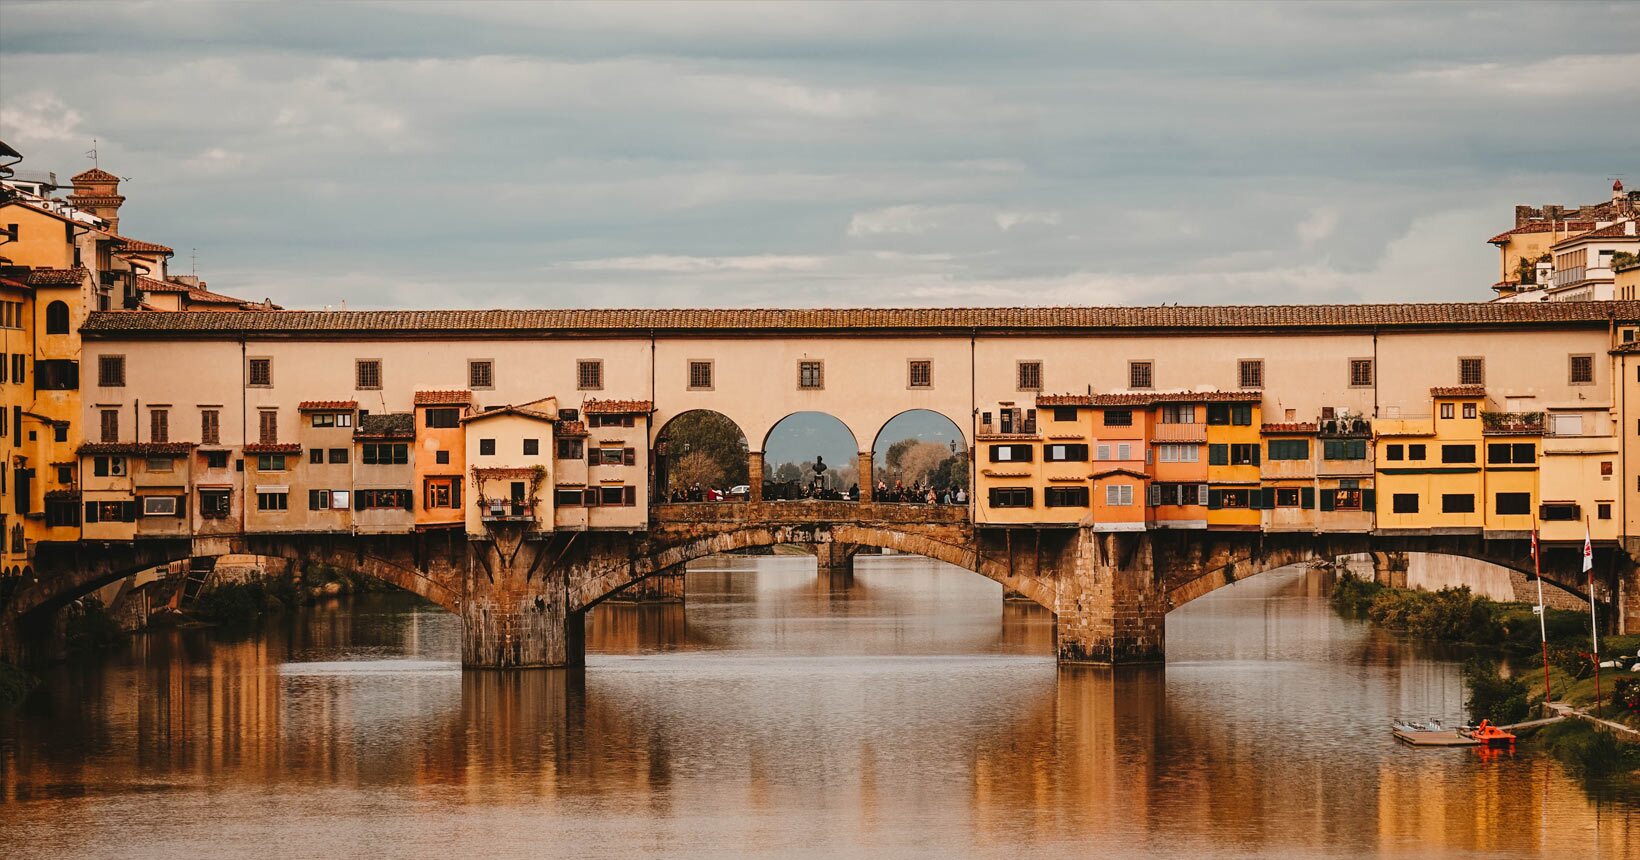 Ponte Vecchio, ícone da arquitetura italiana, será temporariamente fechada para reforma